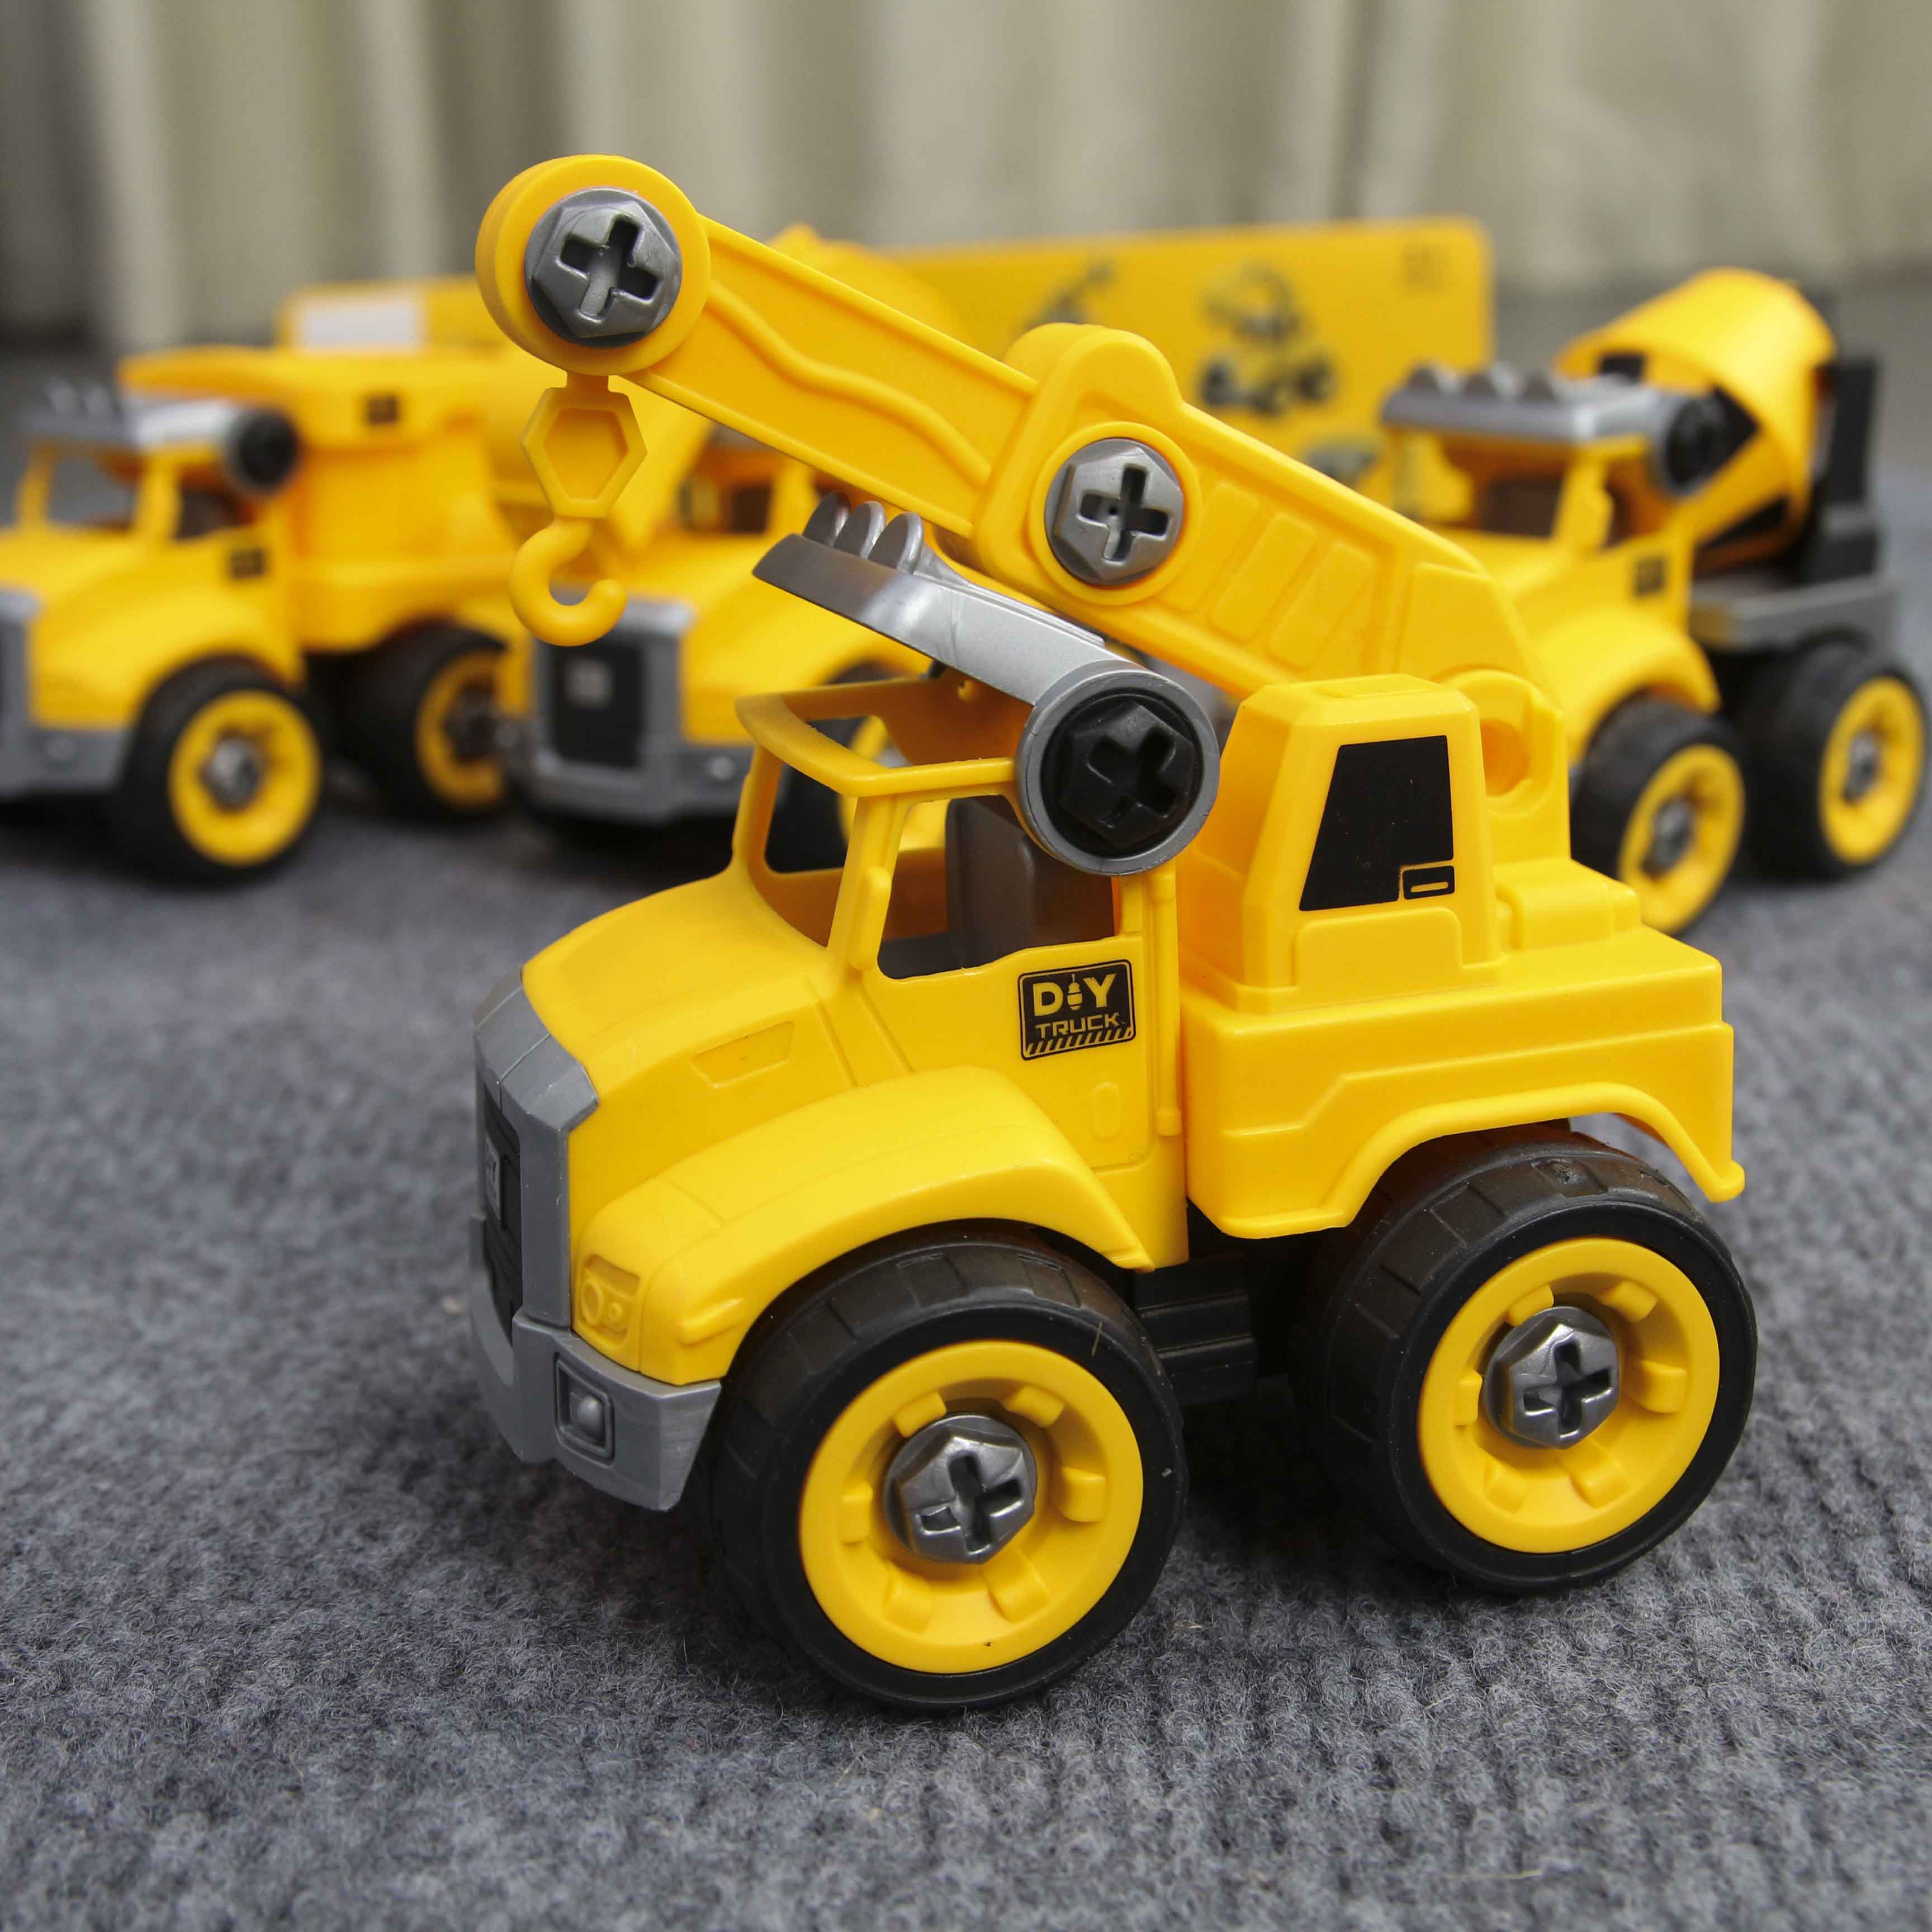 Đồ chơi lắp ghép mô hình oto xây dựng DIY 4 món gồm Cần cẩu, máy múc, xe bồn và xe ben Toys house